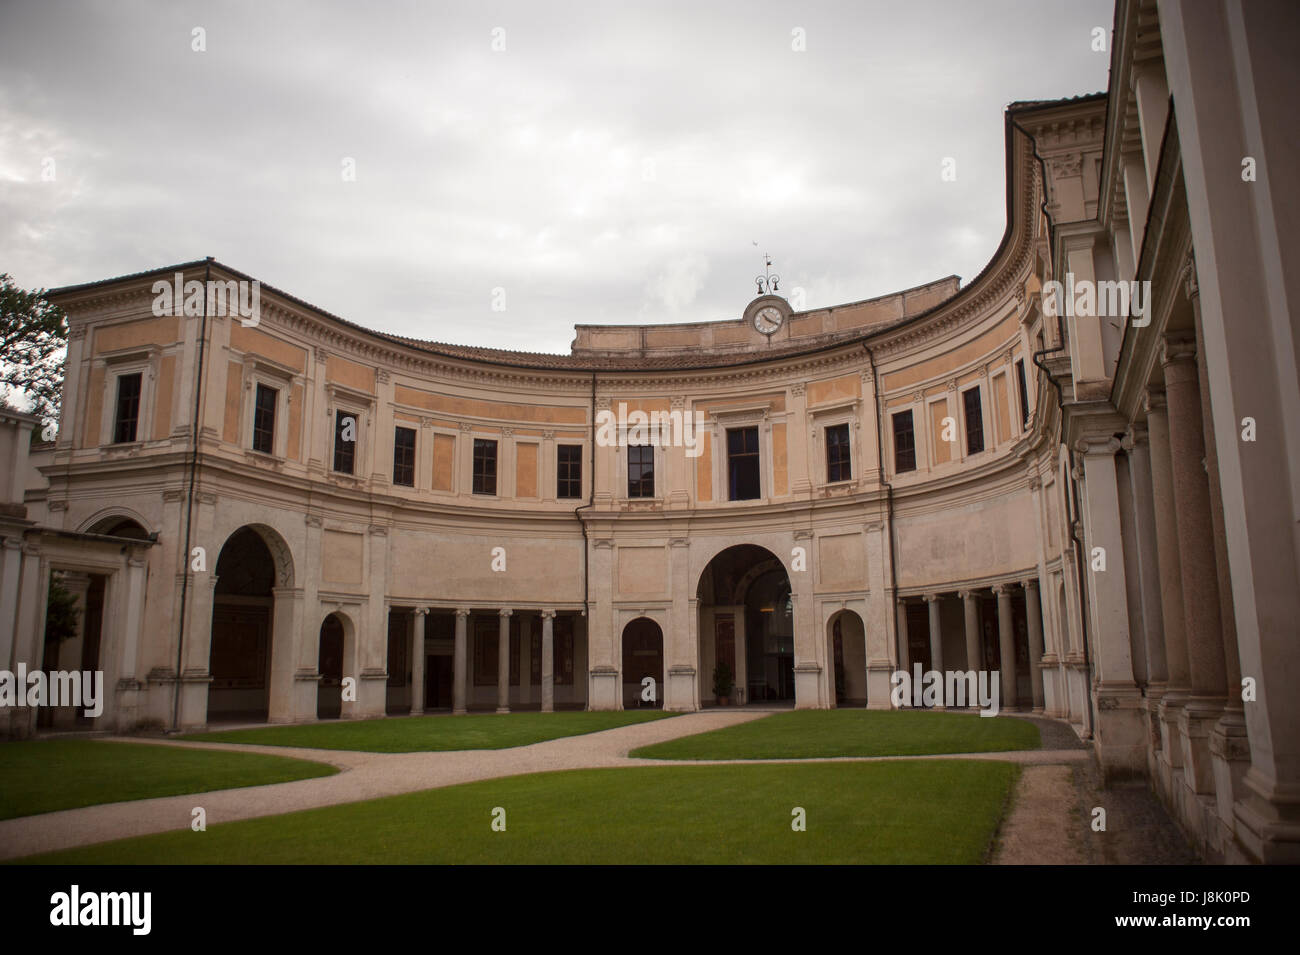 Le portique de fresques semi-circulaire de la Villa Giulia à Rome Banque D'Images